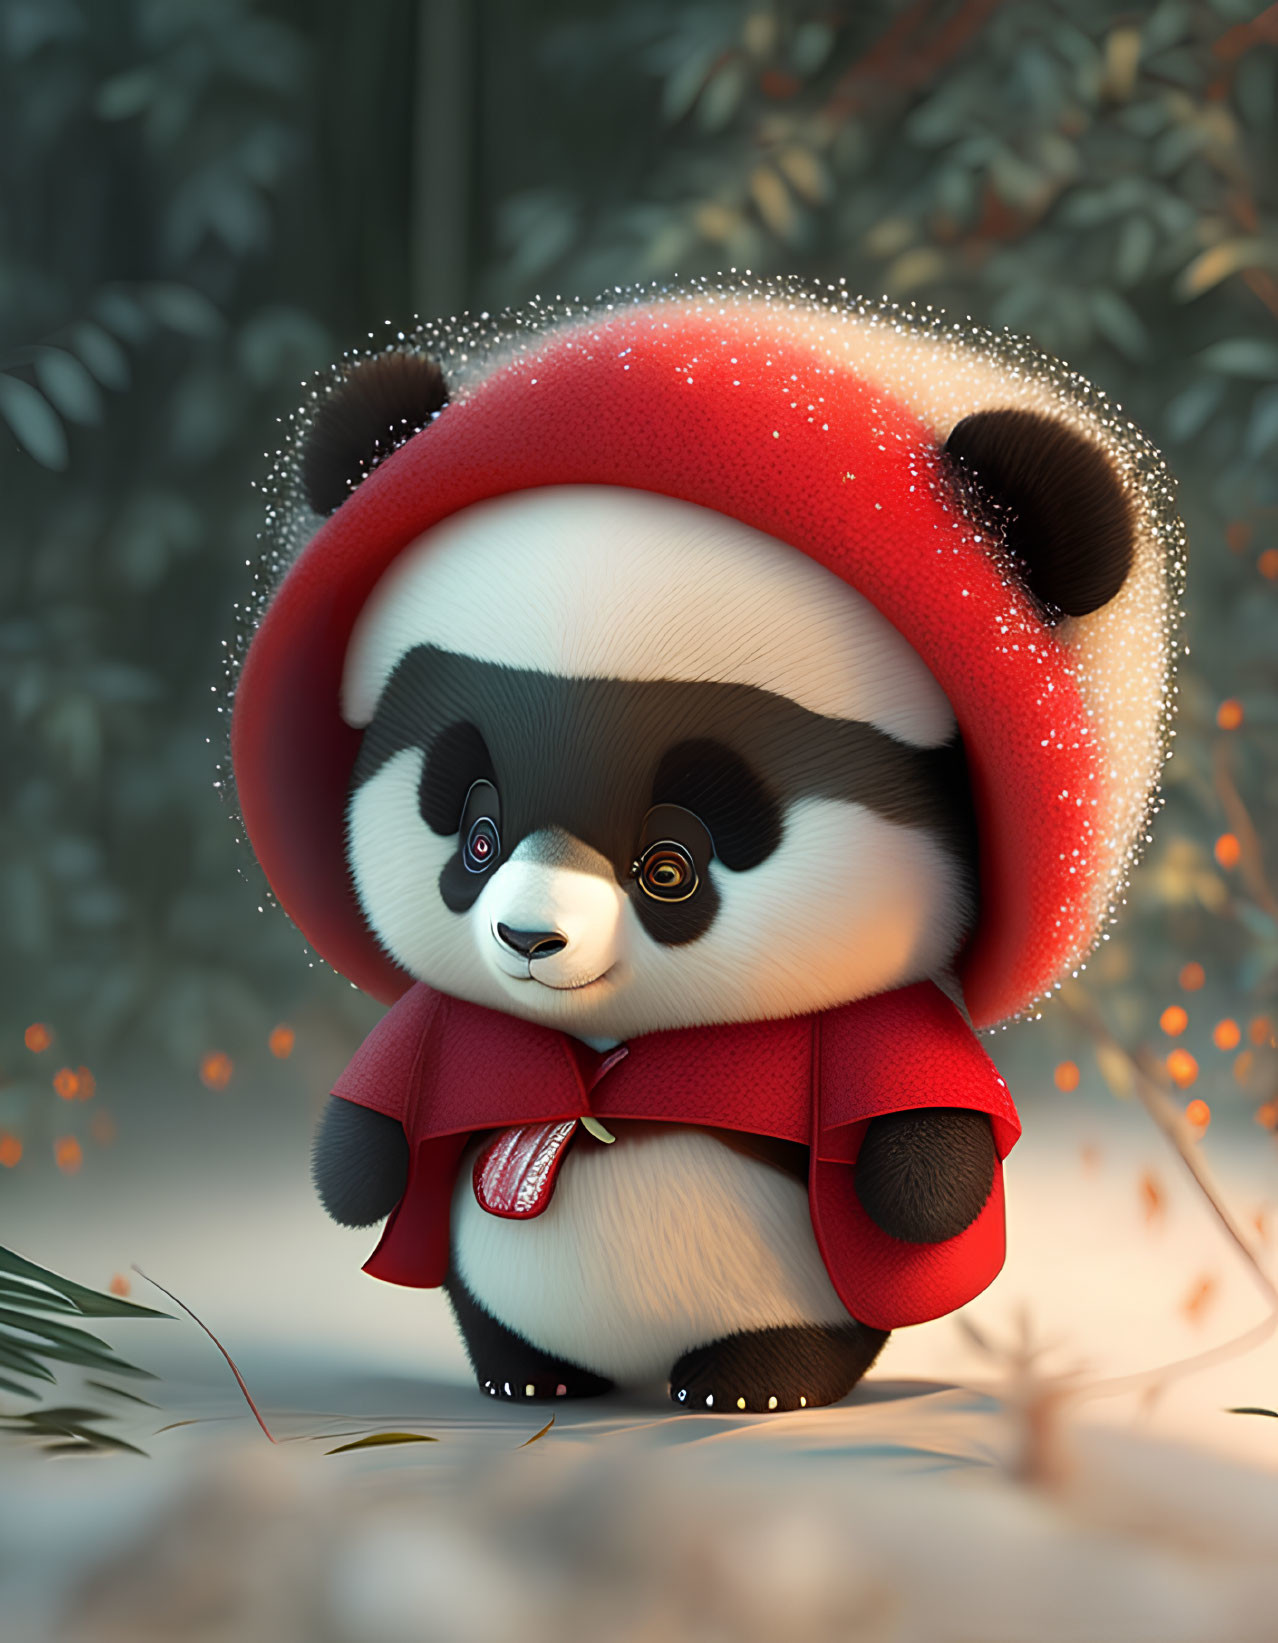 Red panda in festive scarf in snowy scene